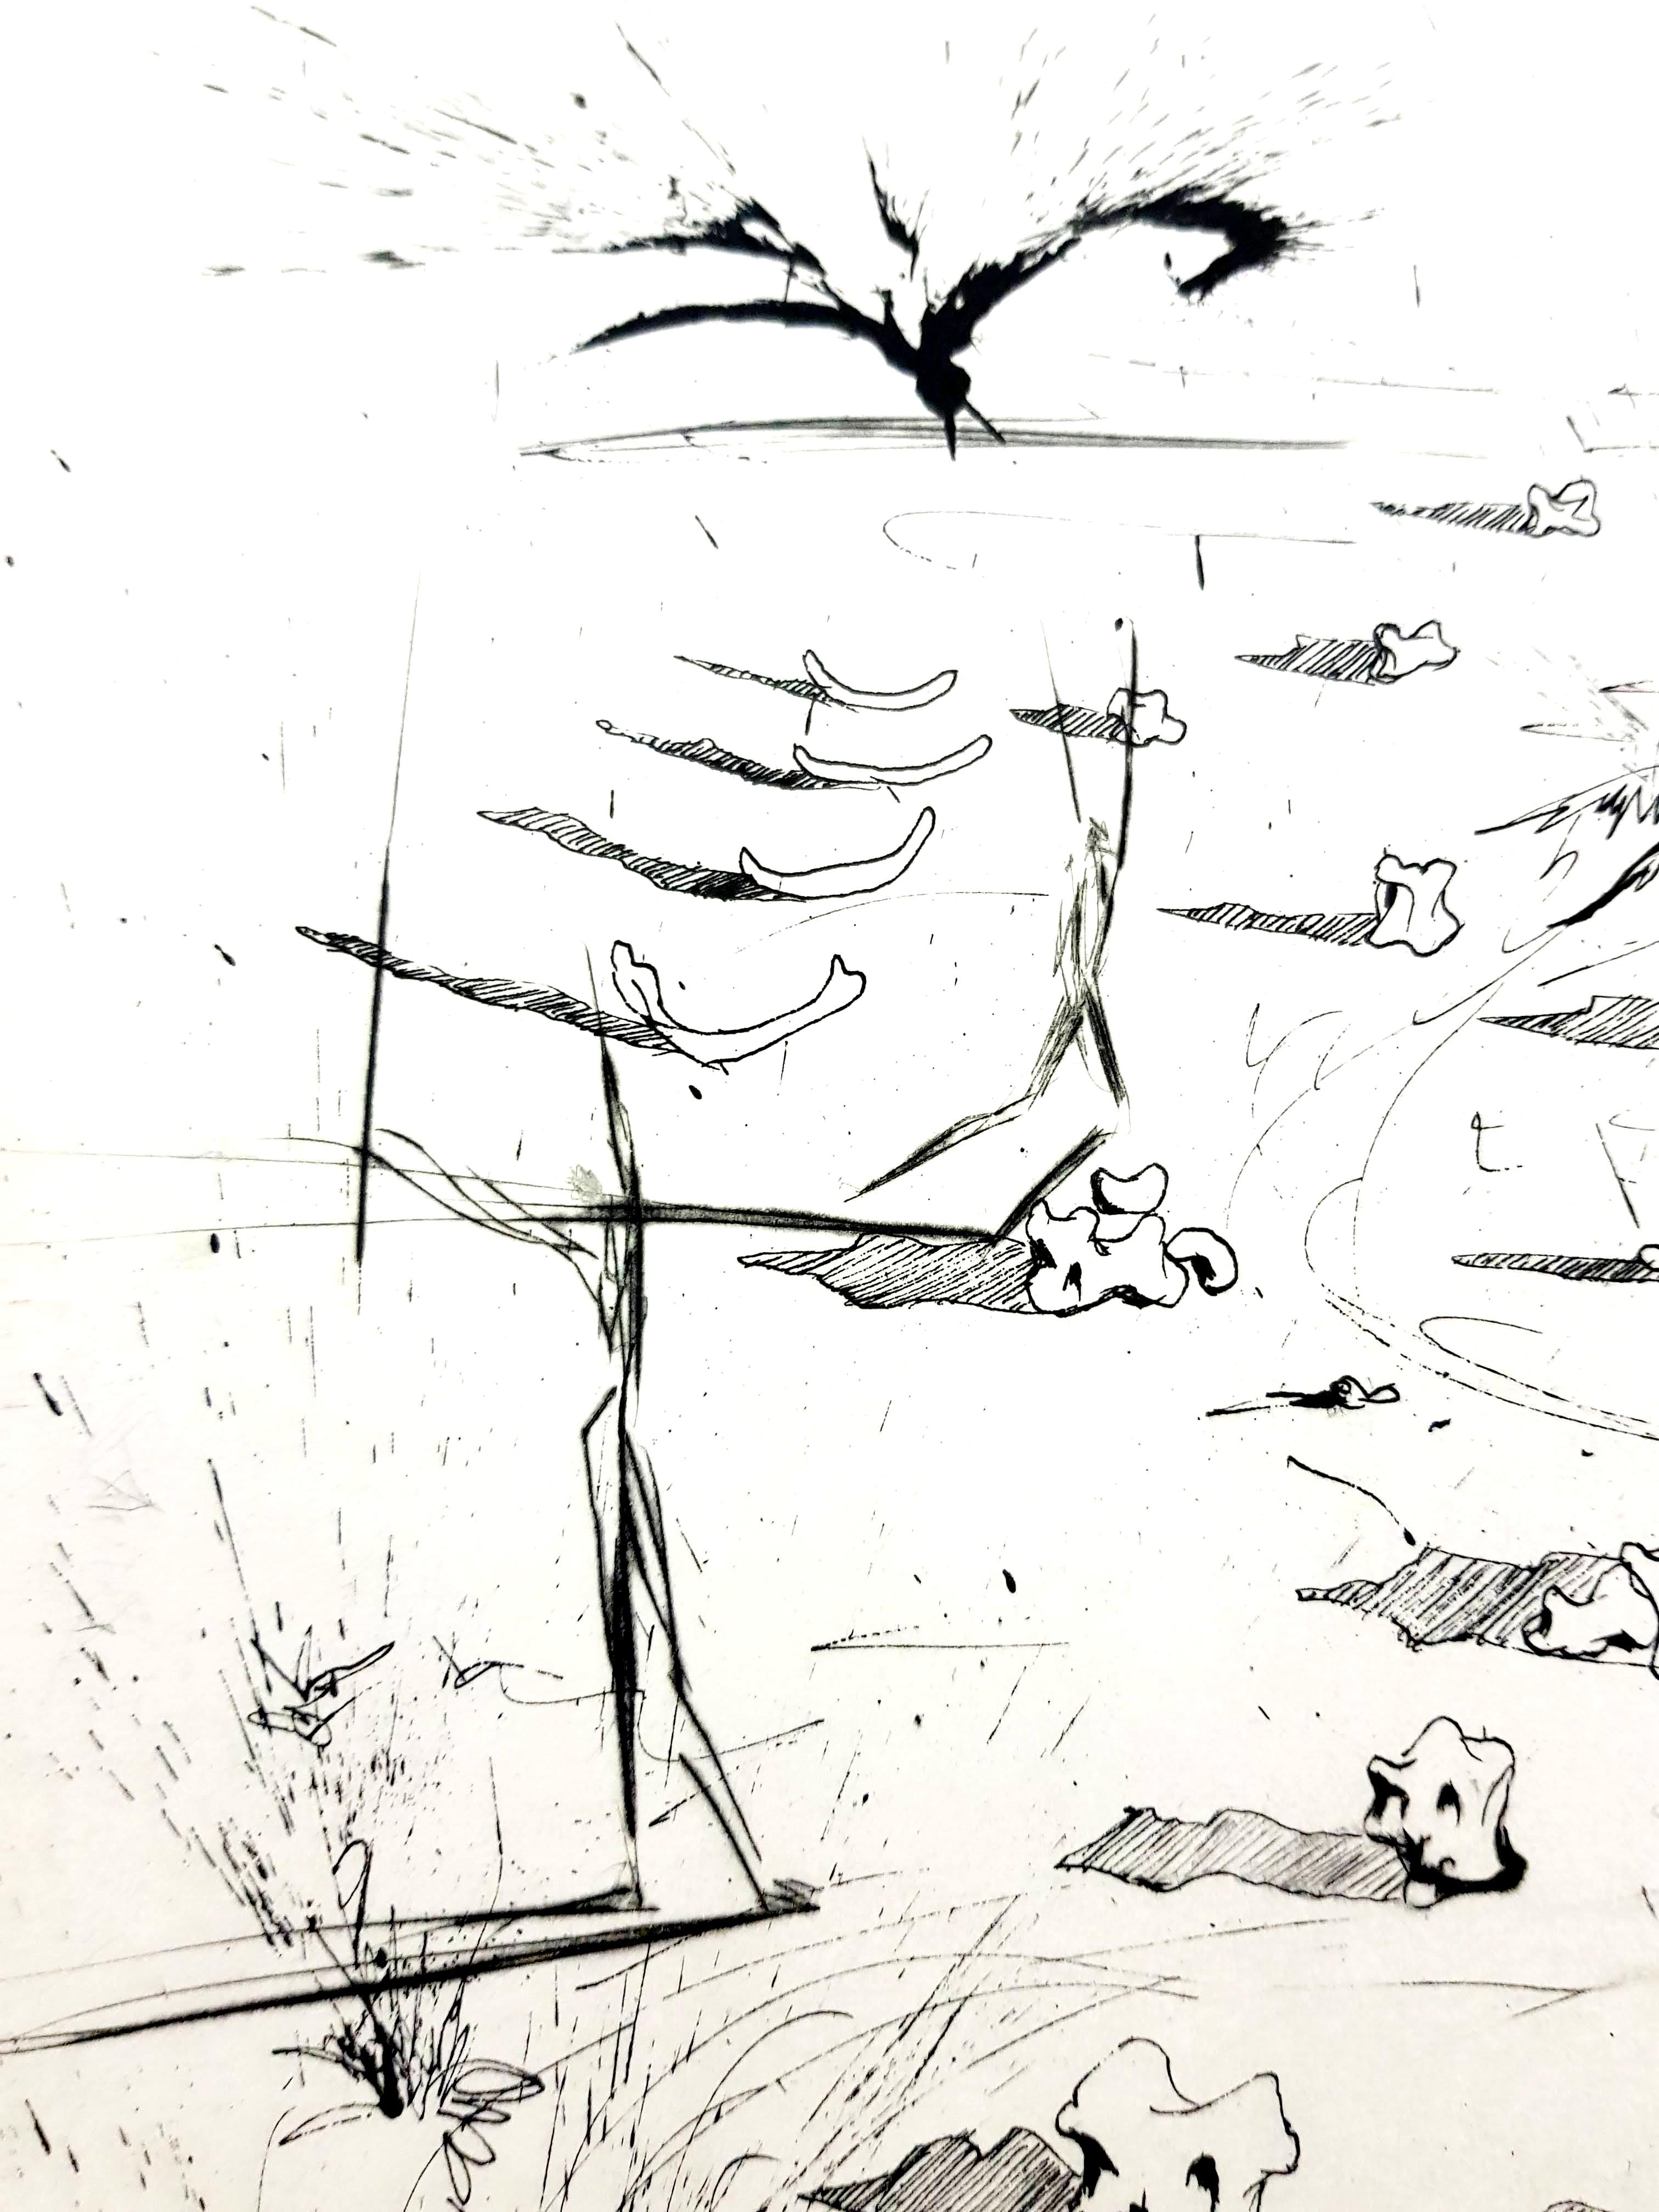 Salvador Dali – Die Trenches – Original-Radierung
Abmessungen: 38 x 28 cm
Auflage: 235
1967
Geprägte Unterschrift
Auf Arches Vellum
Referenzen : Feld 67-10 (S. 34-35)